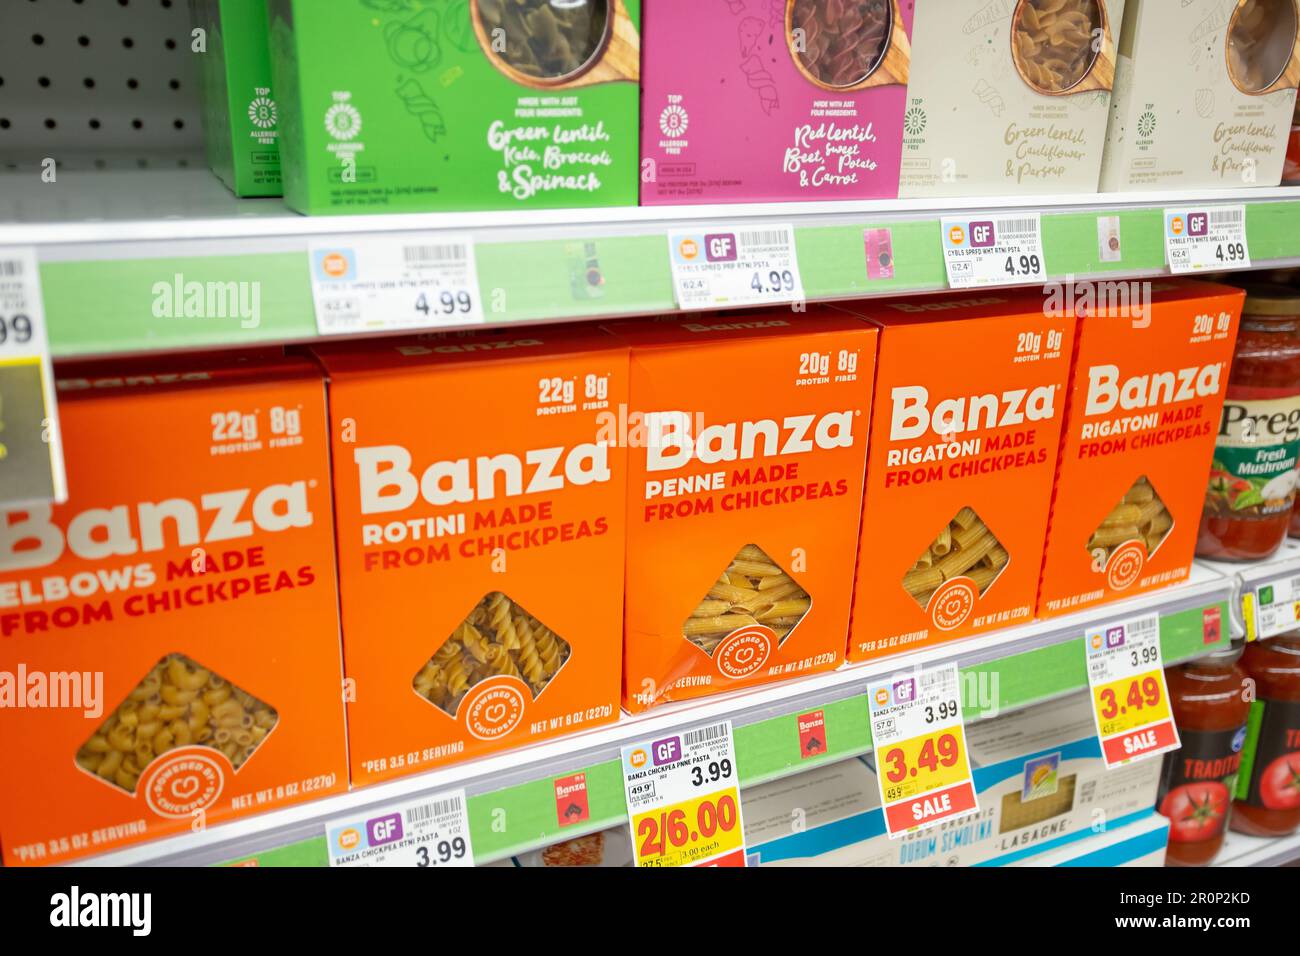 Los Angeles, Kalifornien, USA - 10-25-2021: Ein Blick auf mehrere Packungen Banza Chickpeas Penne Pasta, die in einem Lebensmittelgeschäft ausgestellt werden. Stockfoto